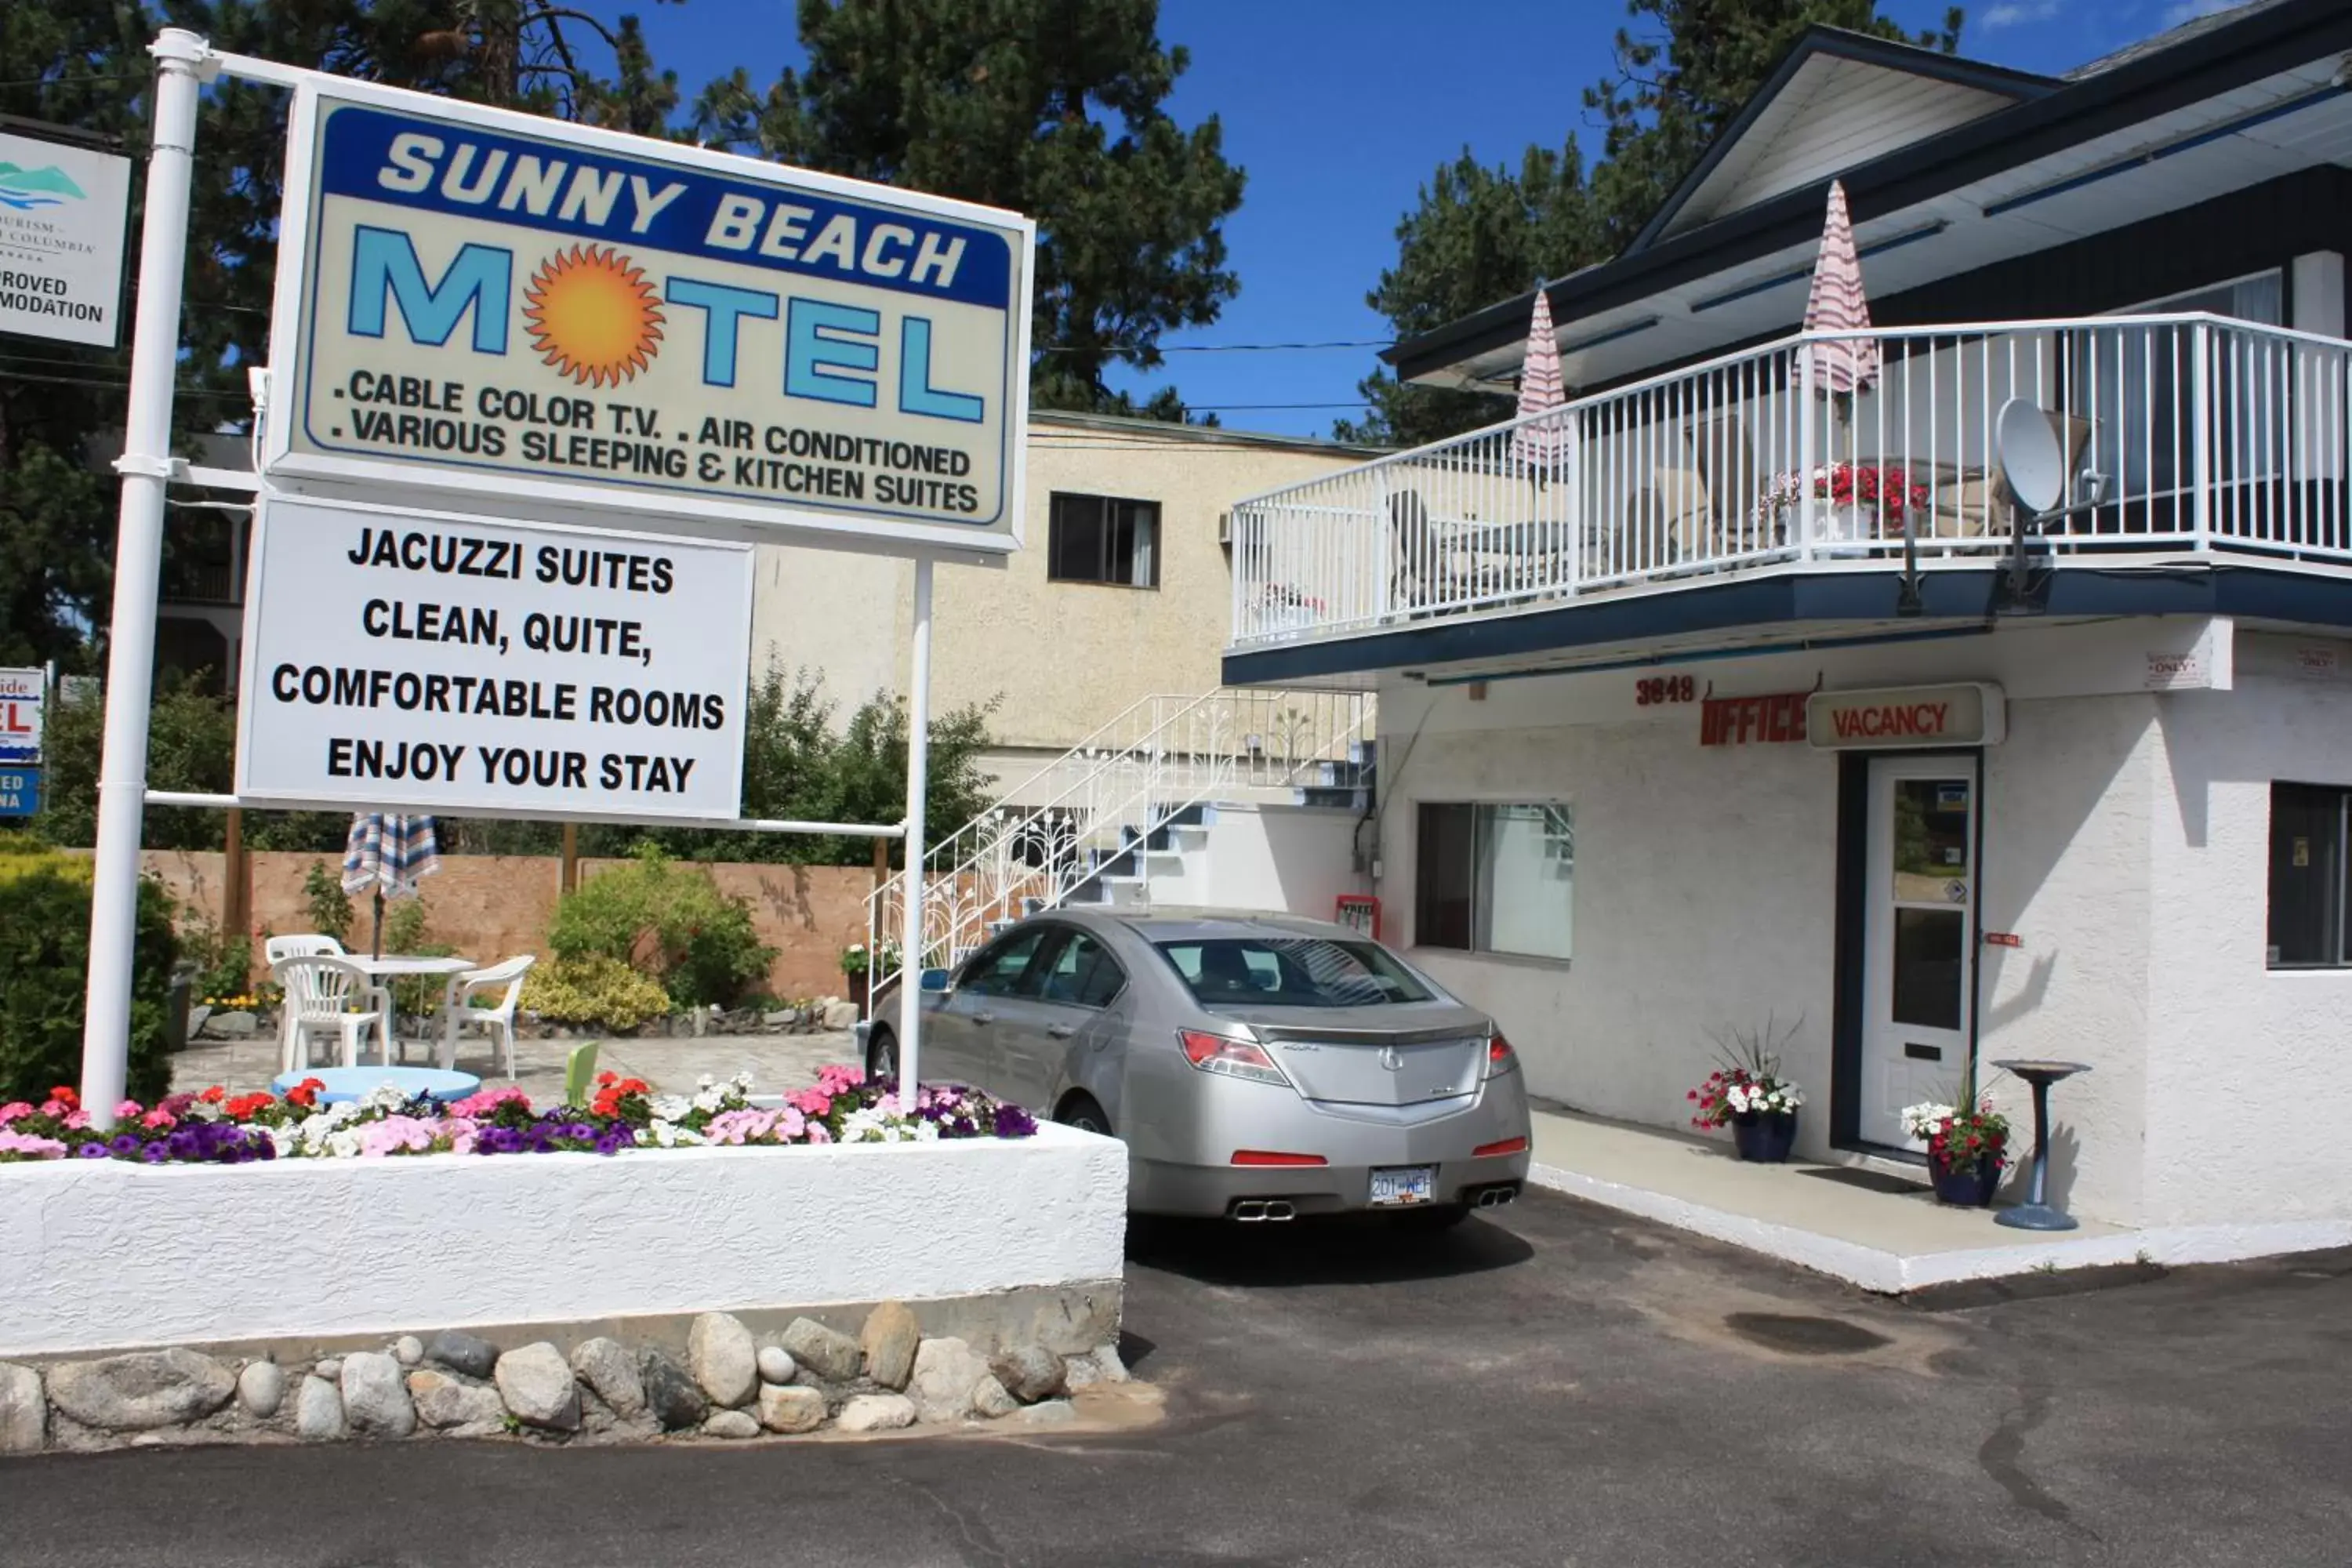 Facade/entrance in Sunny Beach Motel